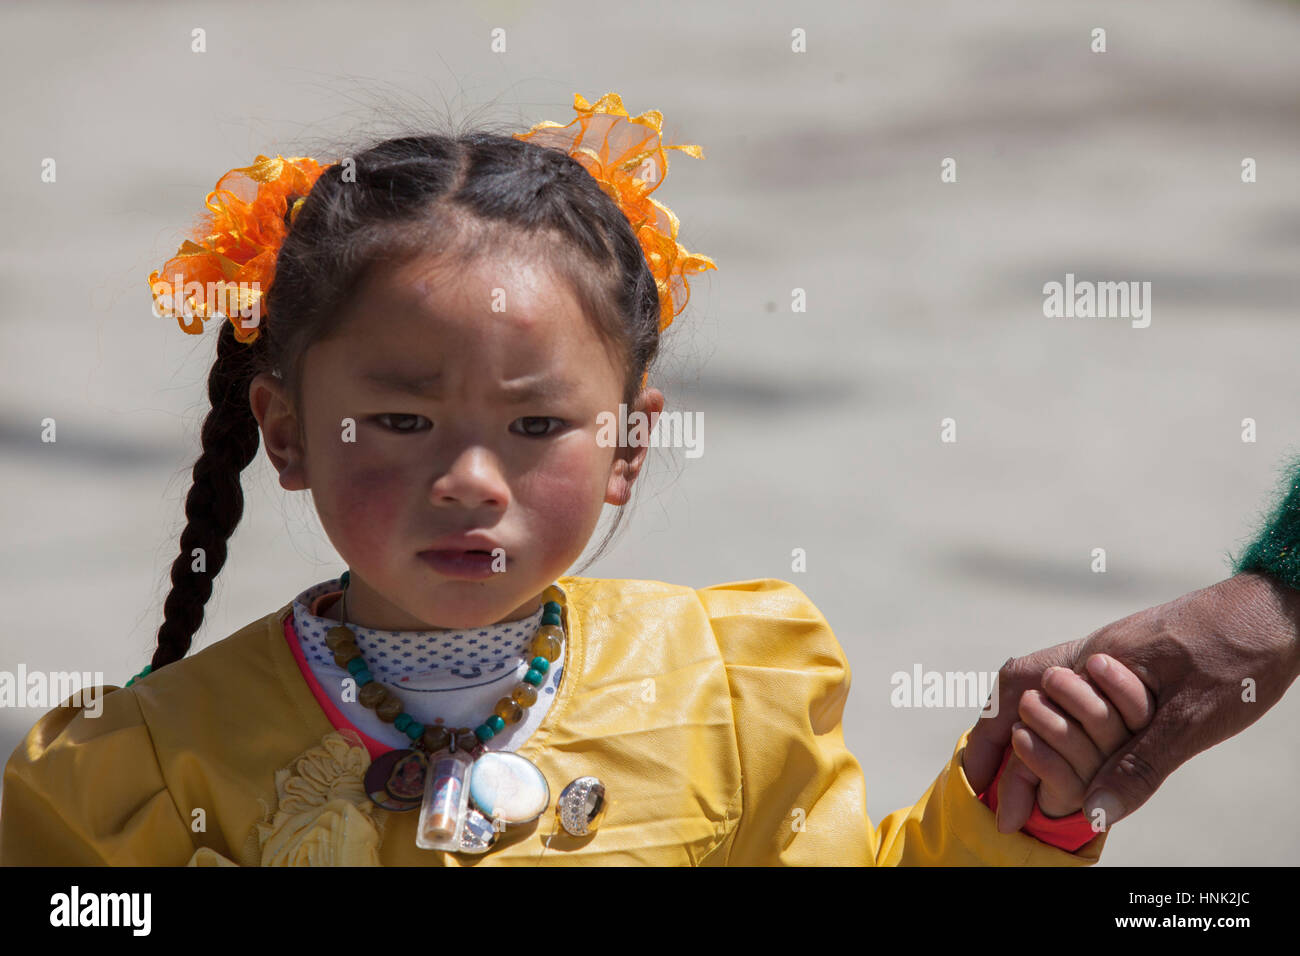 Tibétains Khampa enfant assiste à la cérémonie de prière Tagong Antiq, haut dans le plateau tibétain, Sichuan, Chine Banque D'Images